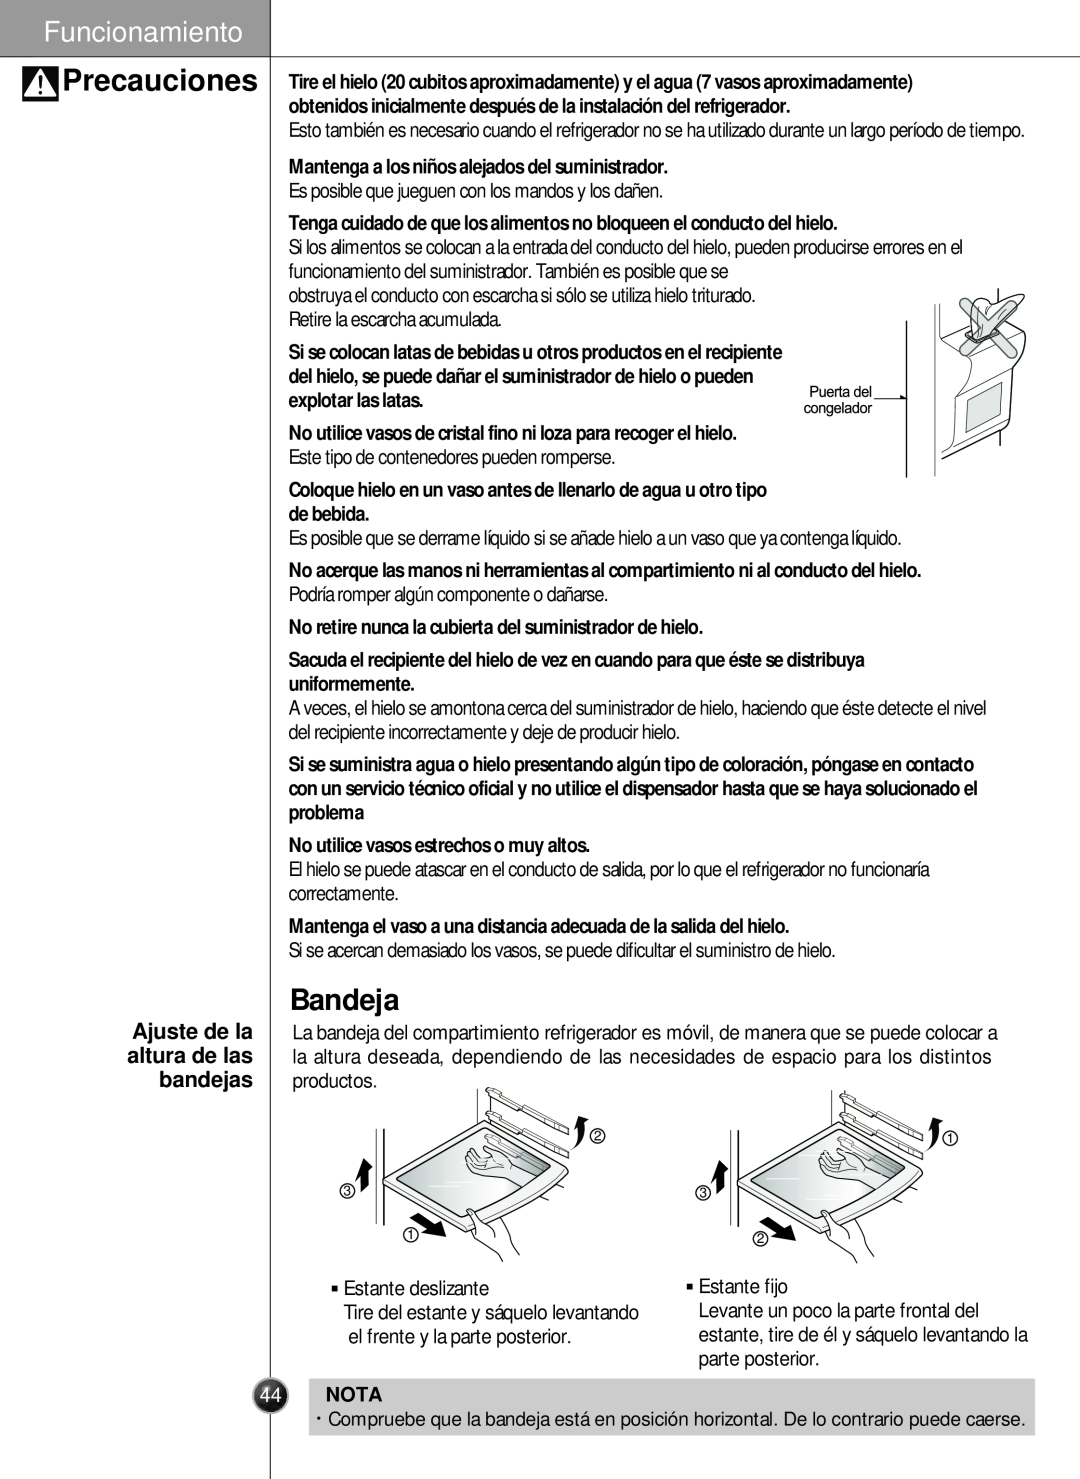 LG Electronics LSC26905 owner manual Bandeja, Precauciones, Ajuste de la altura de las bandejas, Funcionamiento, Nota 